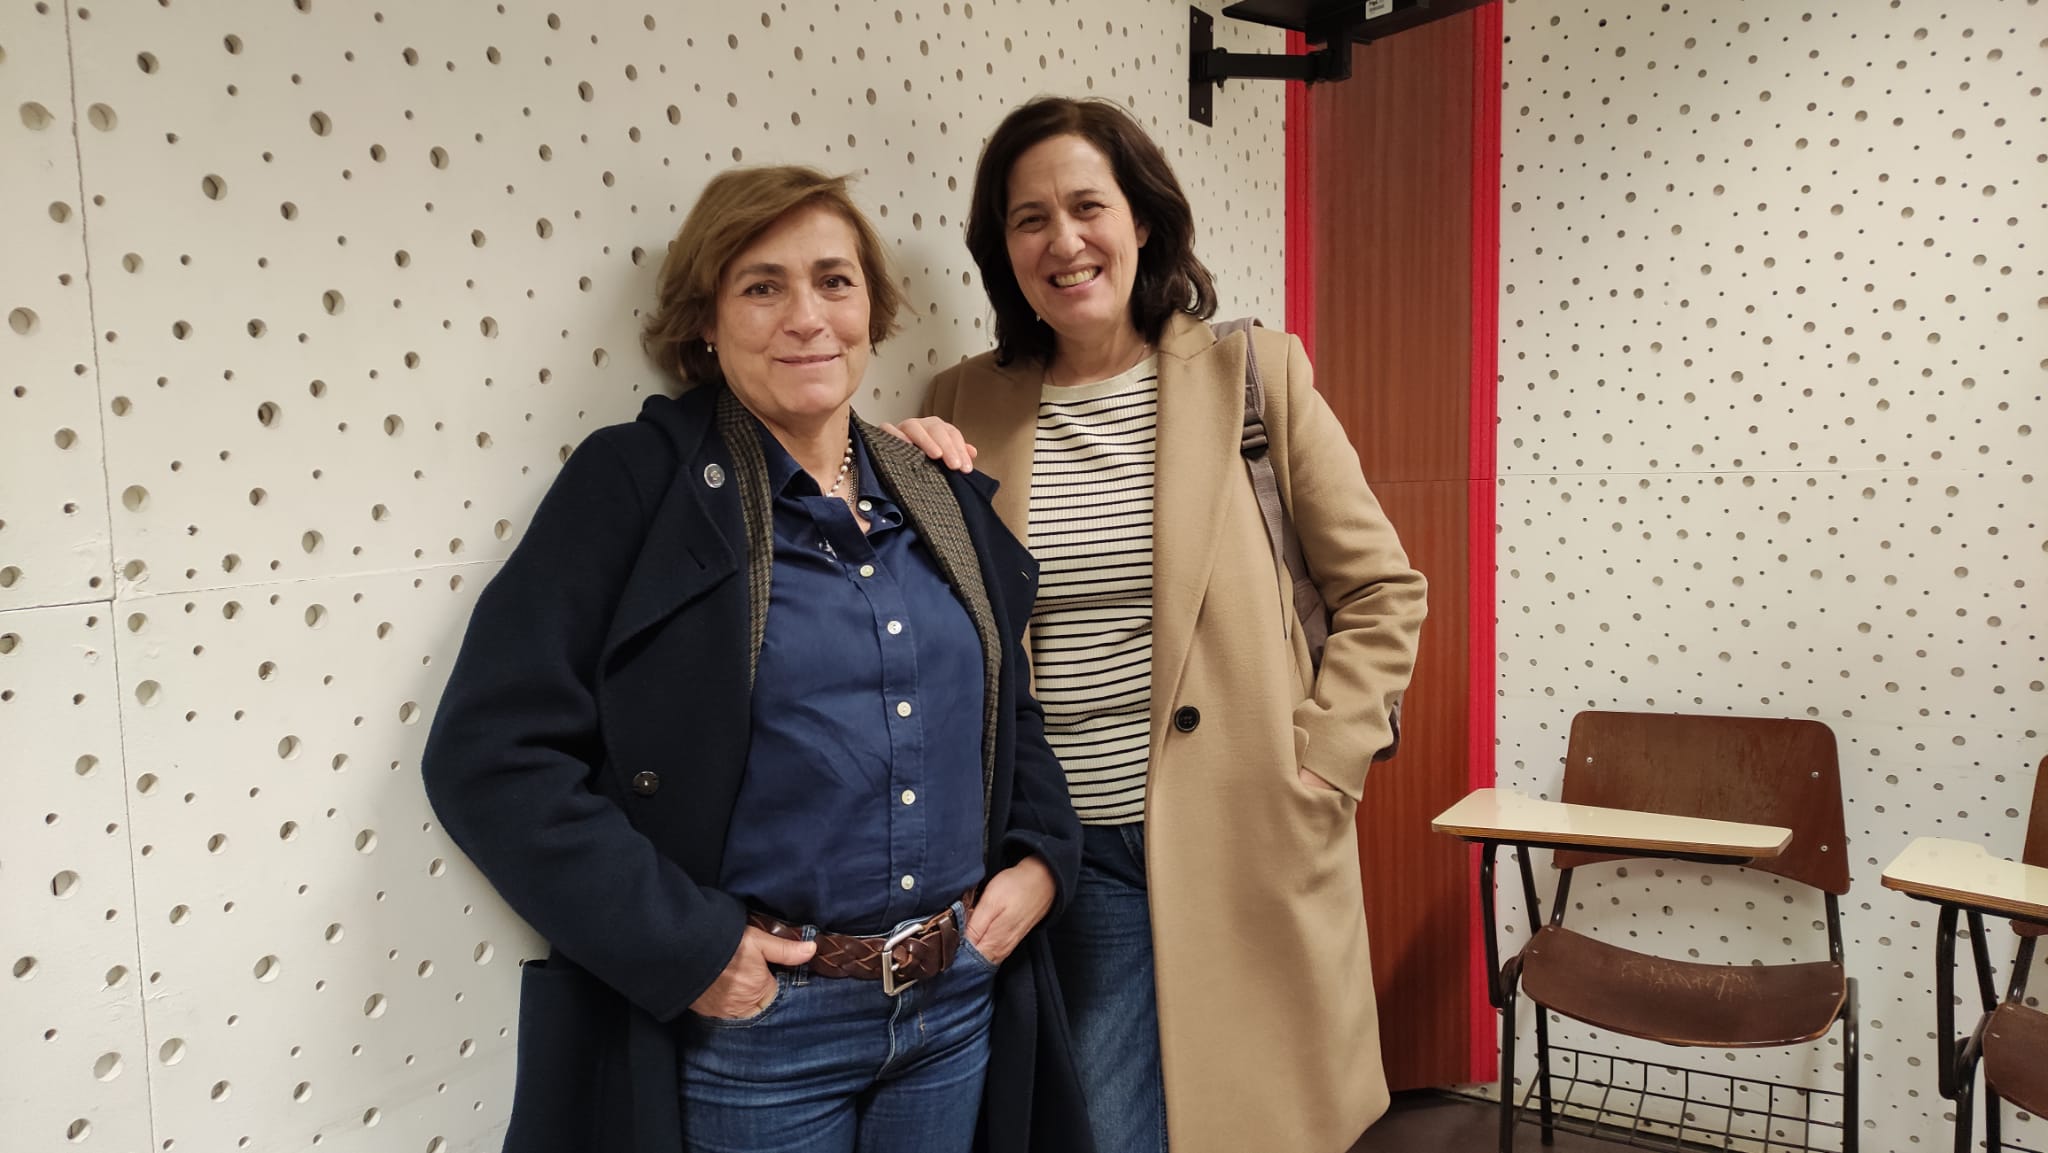 Entrevista. Maria do Rosário e Aldina Duarte: “O Fado não vive sem poesia”